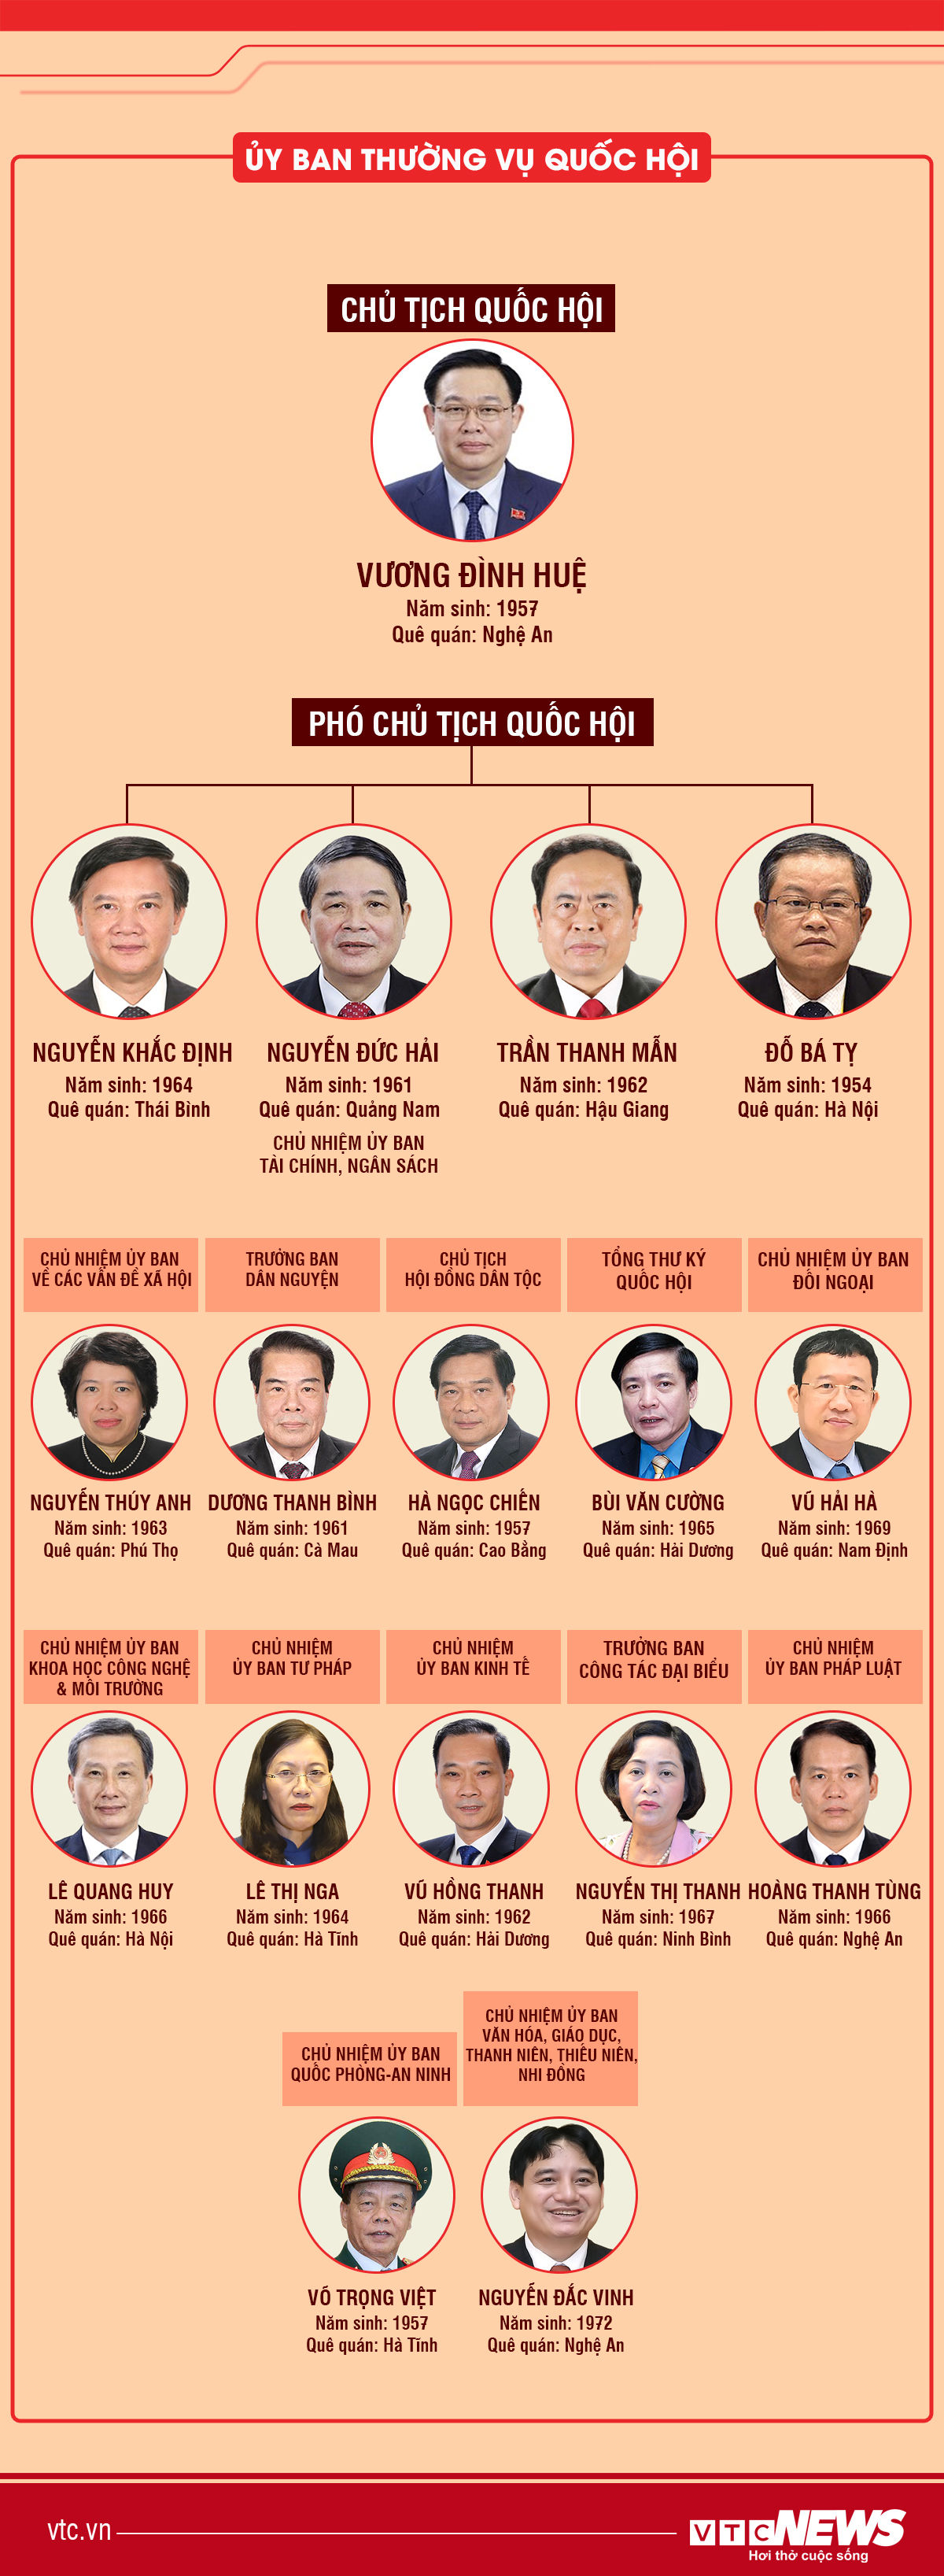 Infographic: Bộ máy lãnh đạo Quốc hội Việt Nam sau kiện toàn - 1